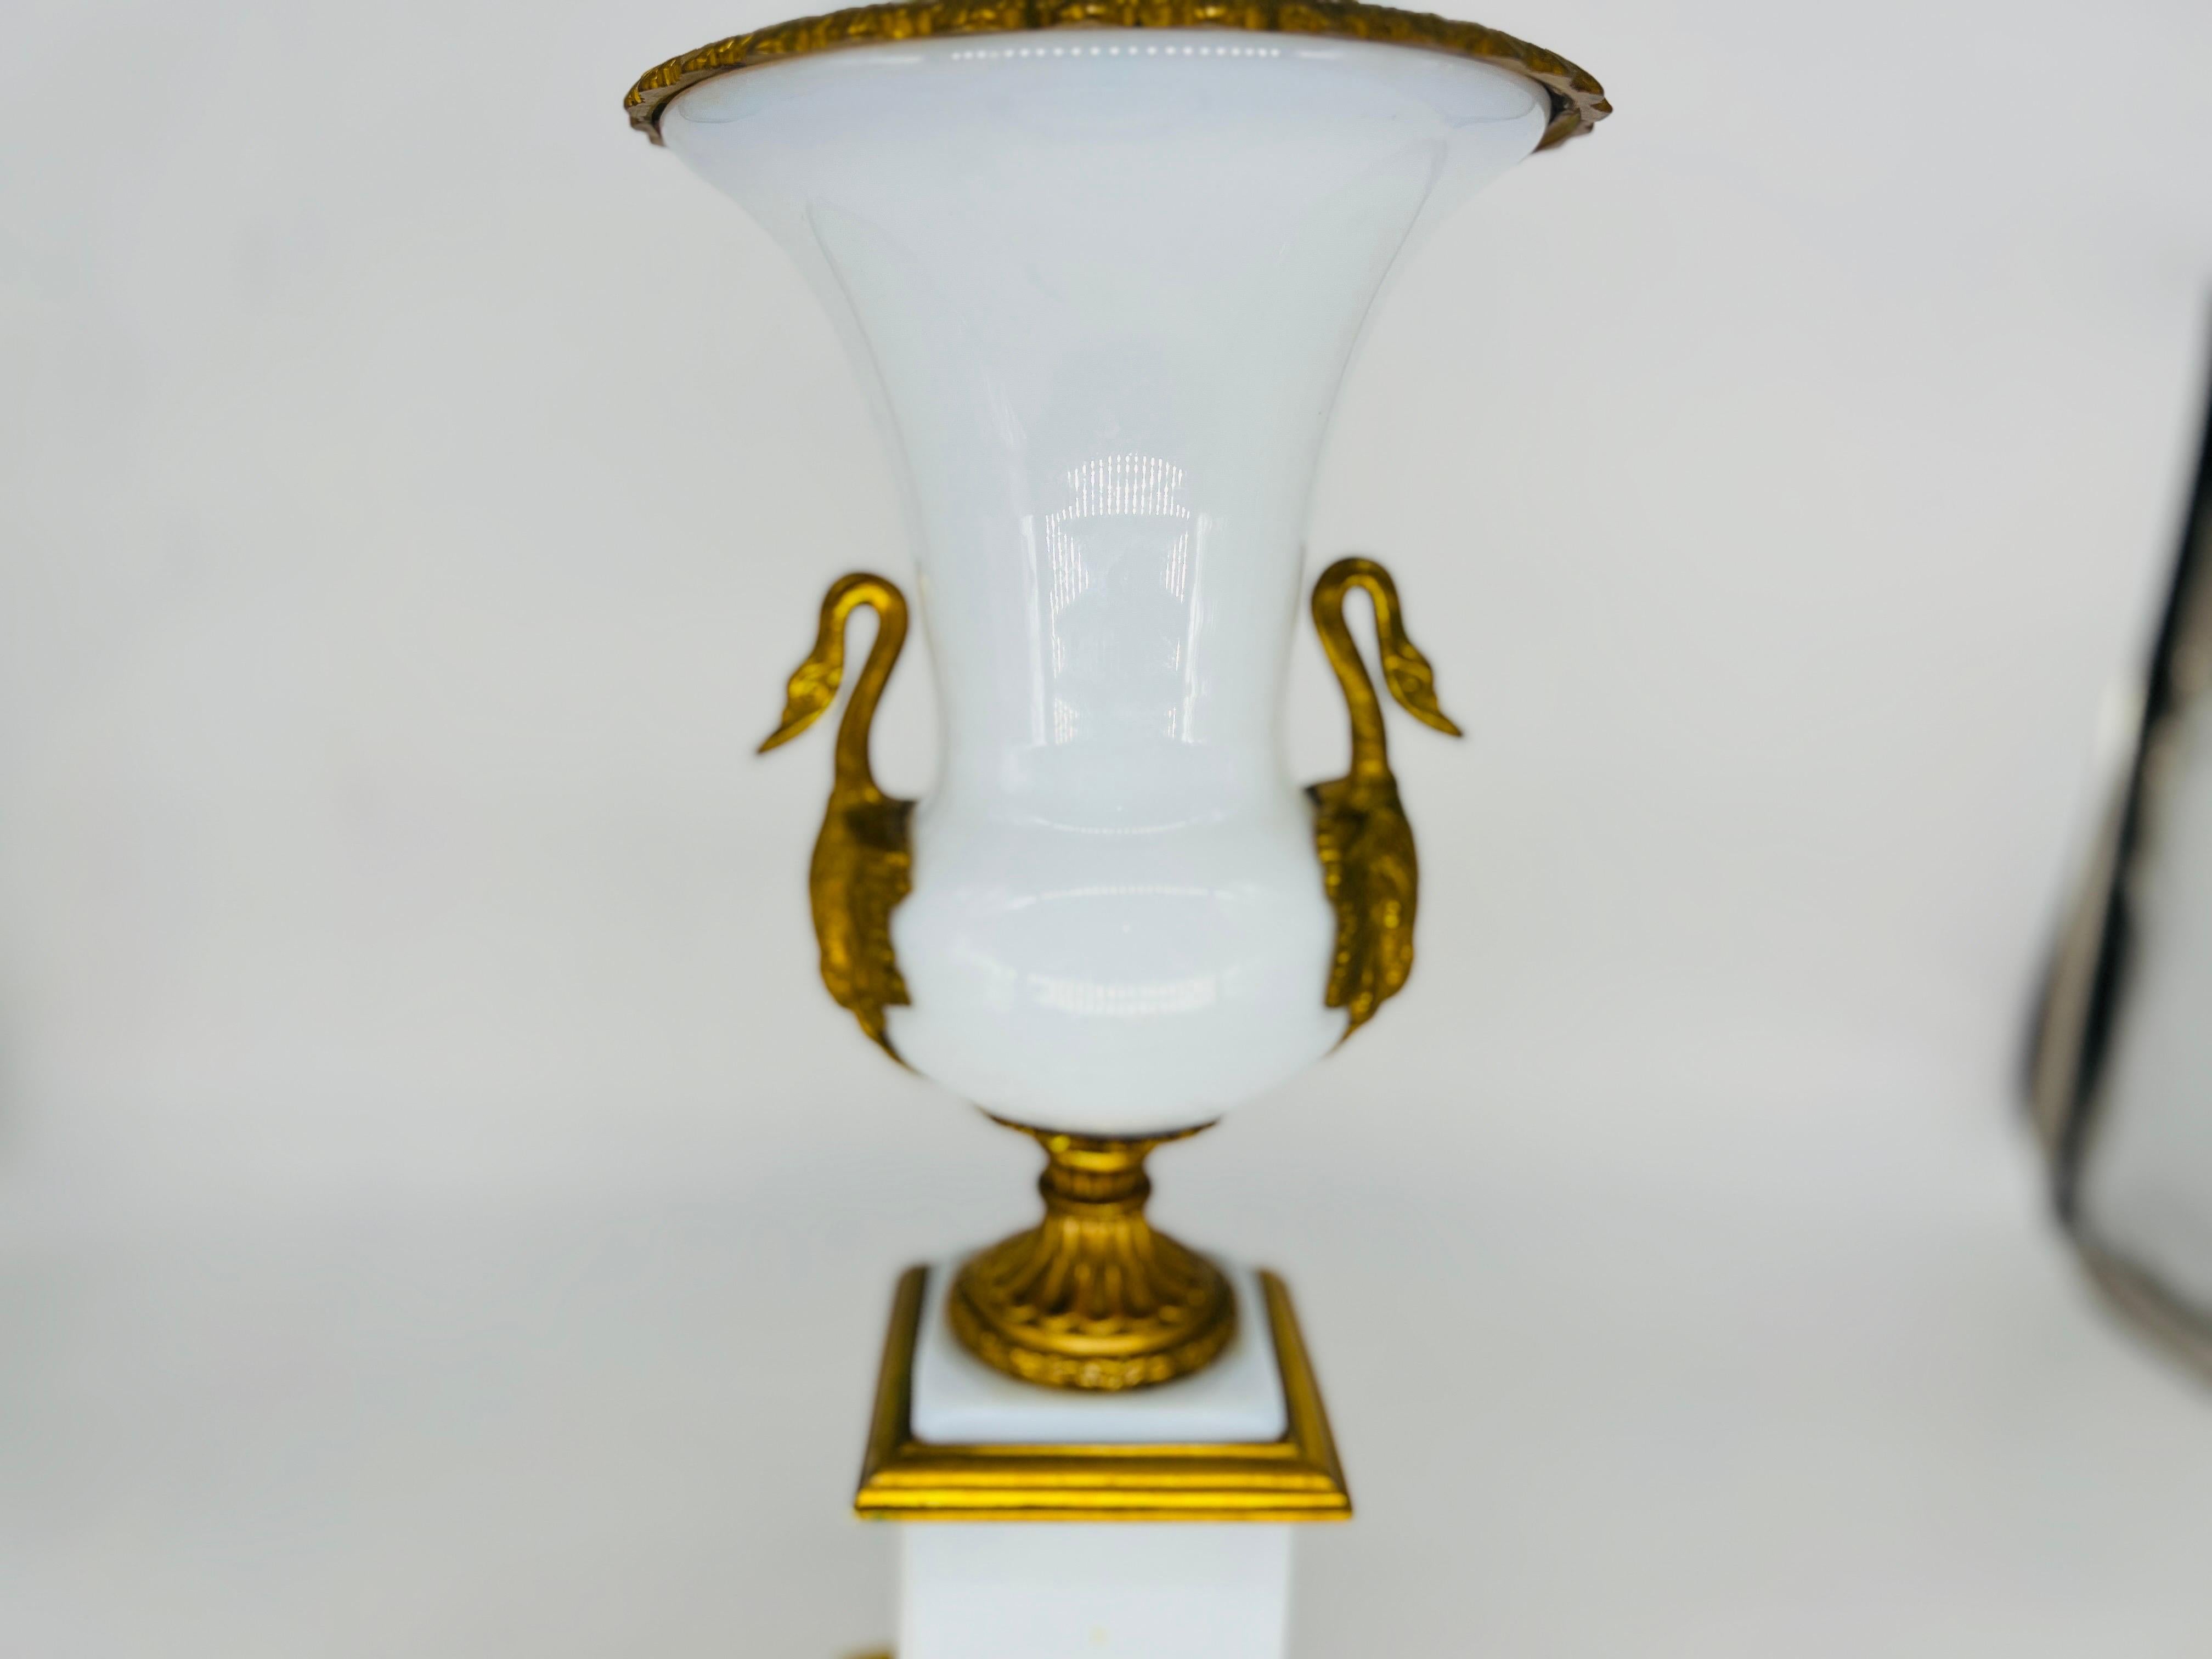 Française, vers 1910. Lampe de table Empire française de bonne qualité, avec corps en verre opalin blanc, montures en bronze doré et poignées en forme de cygne sur le corps central en verre opalin. Marqué en bas 